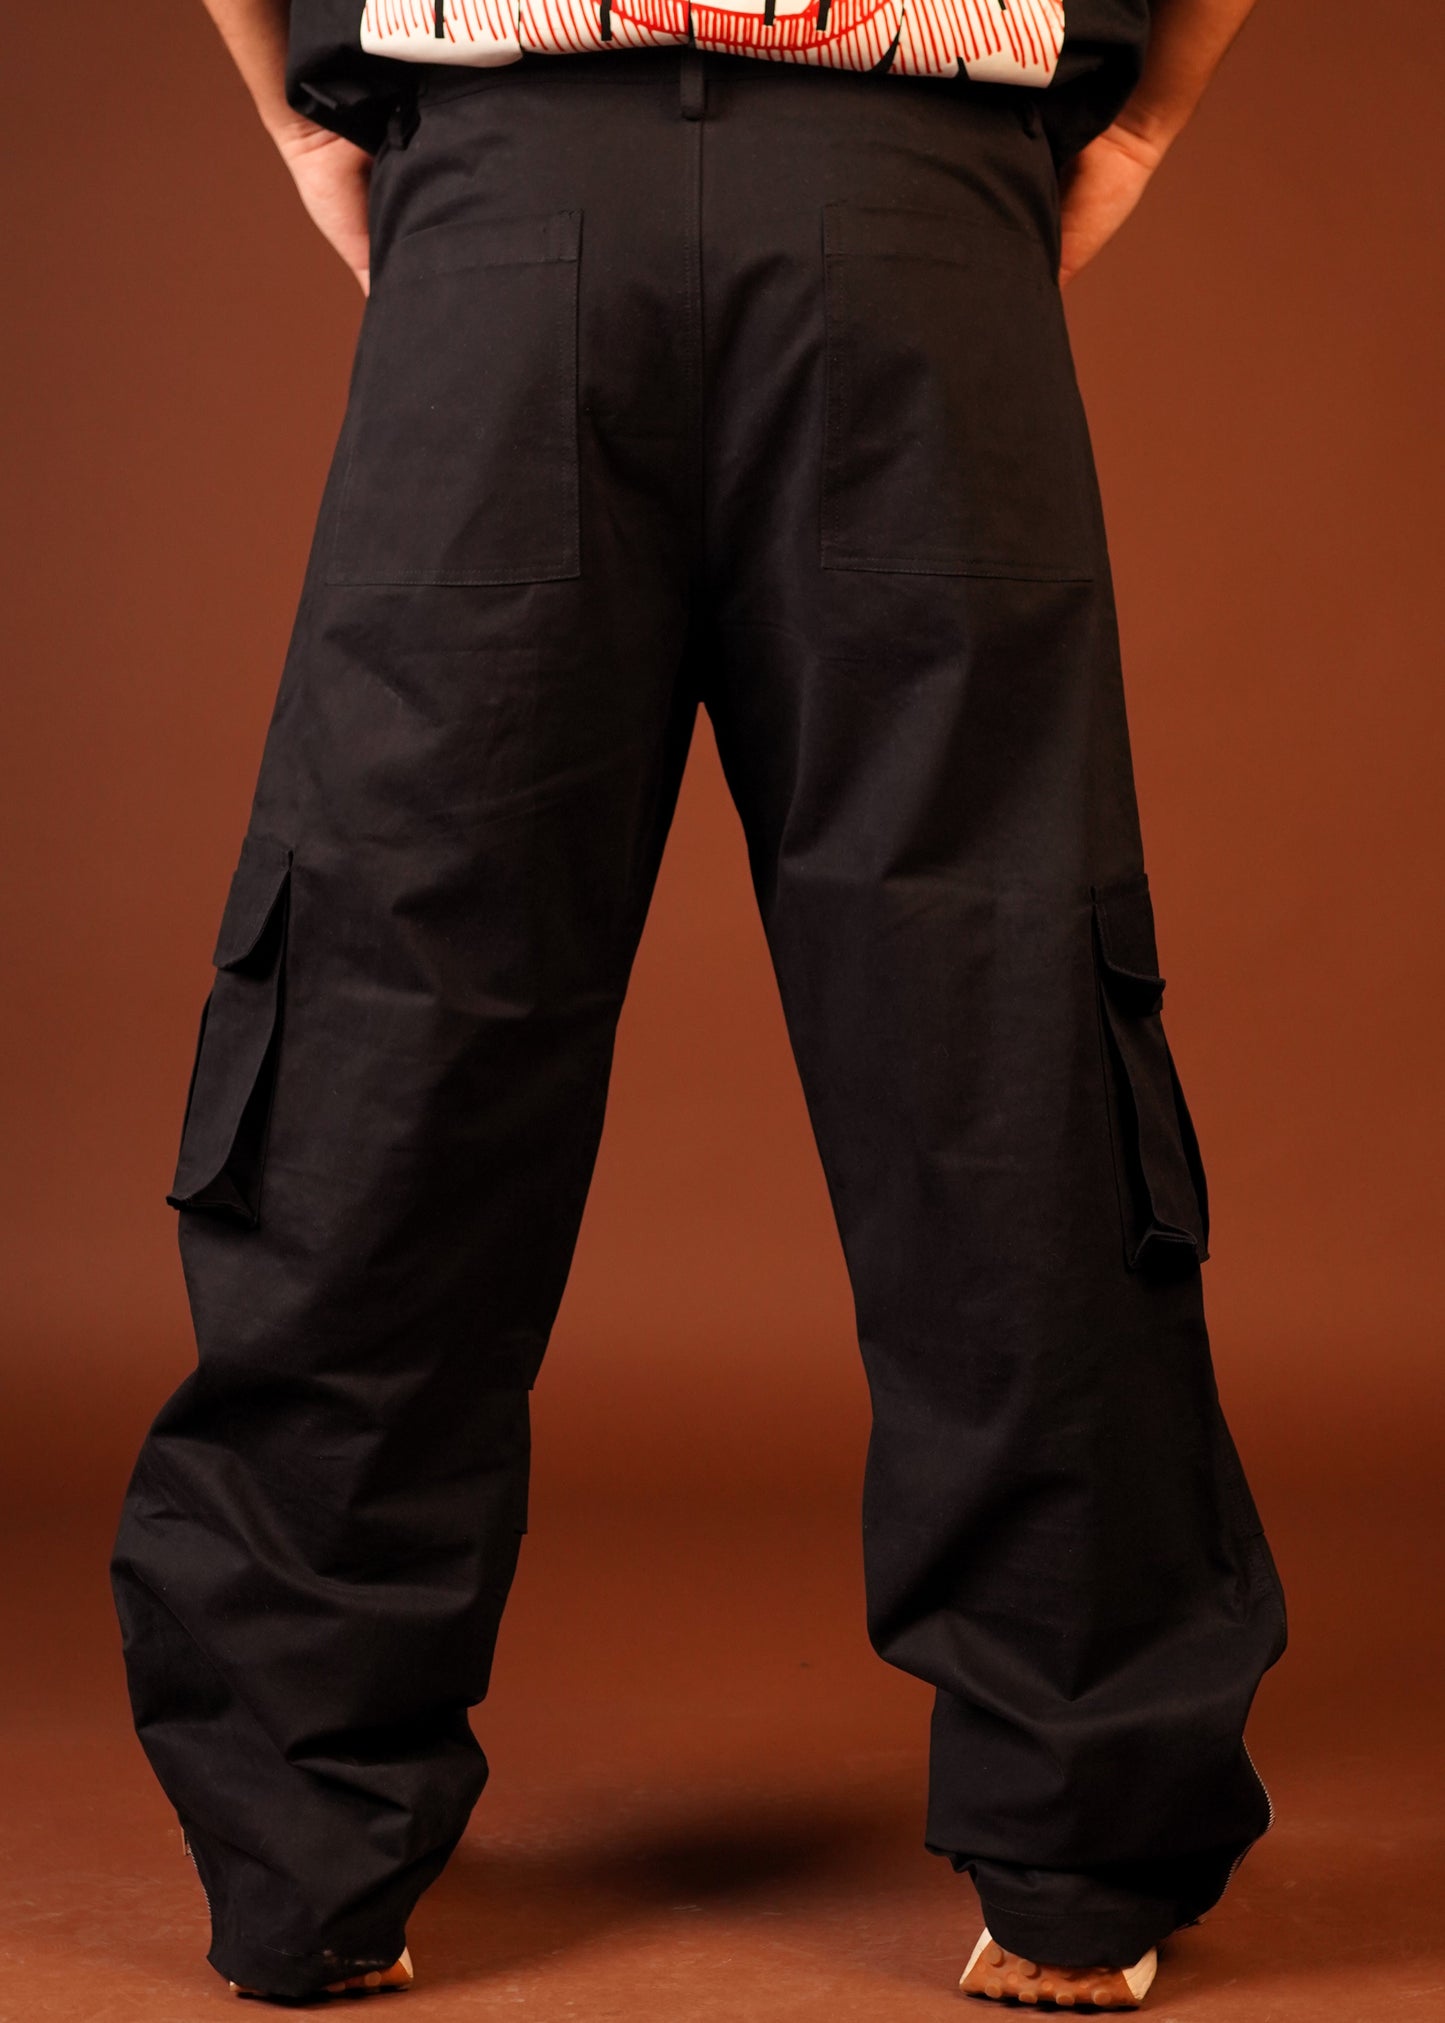 Multi Pockets Side Zipper Black unisex Cargo Pants